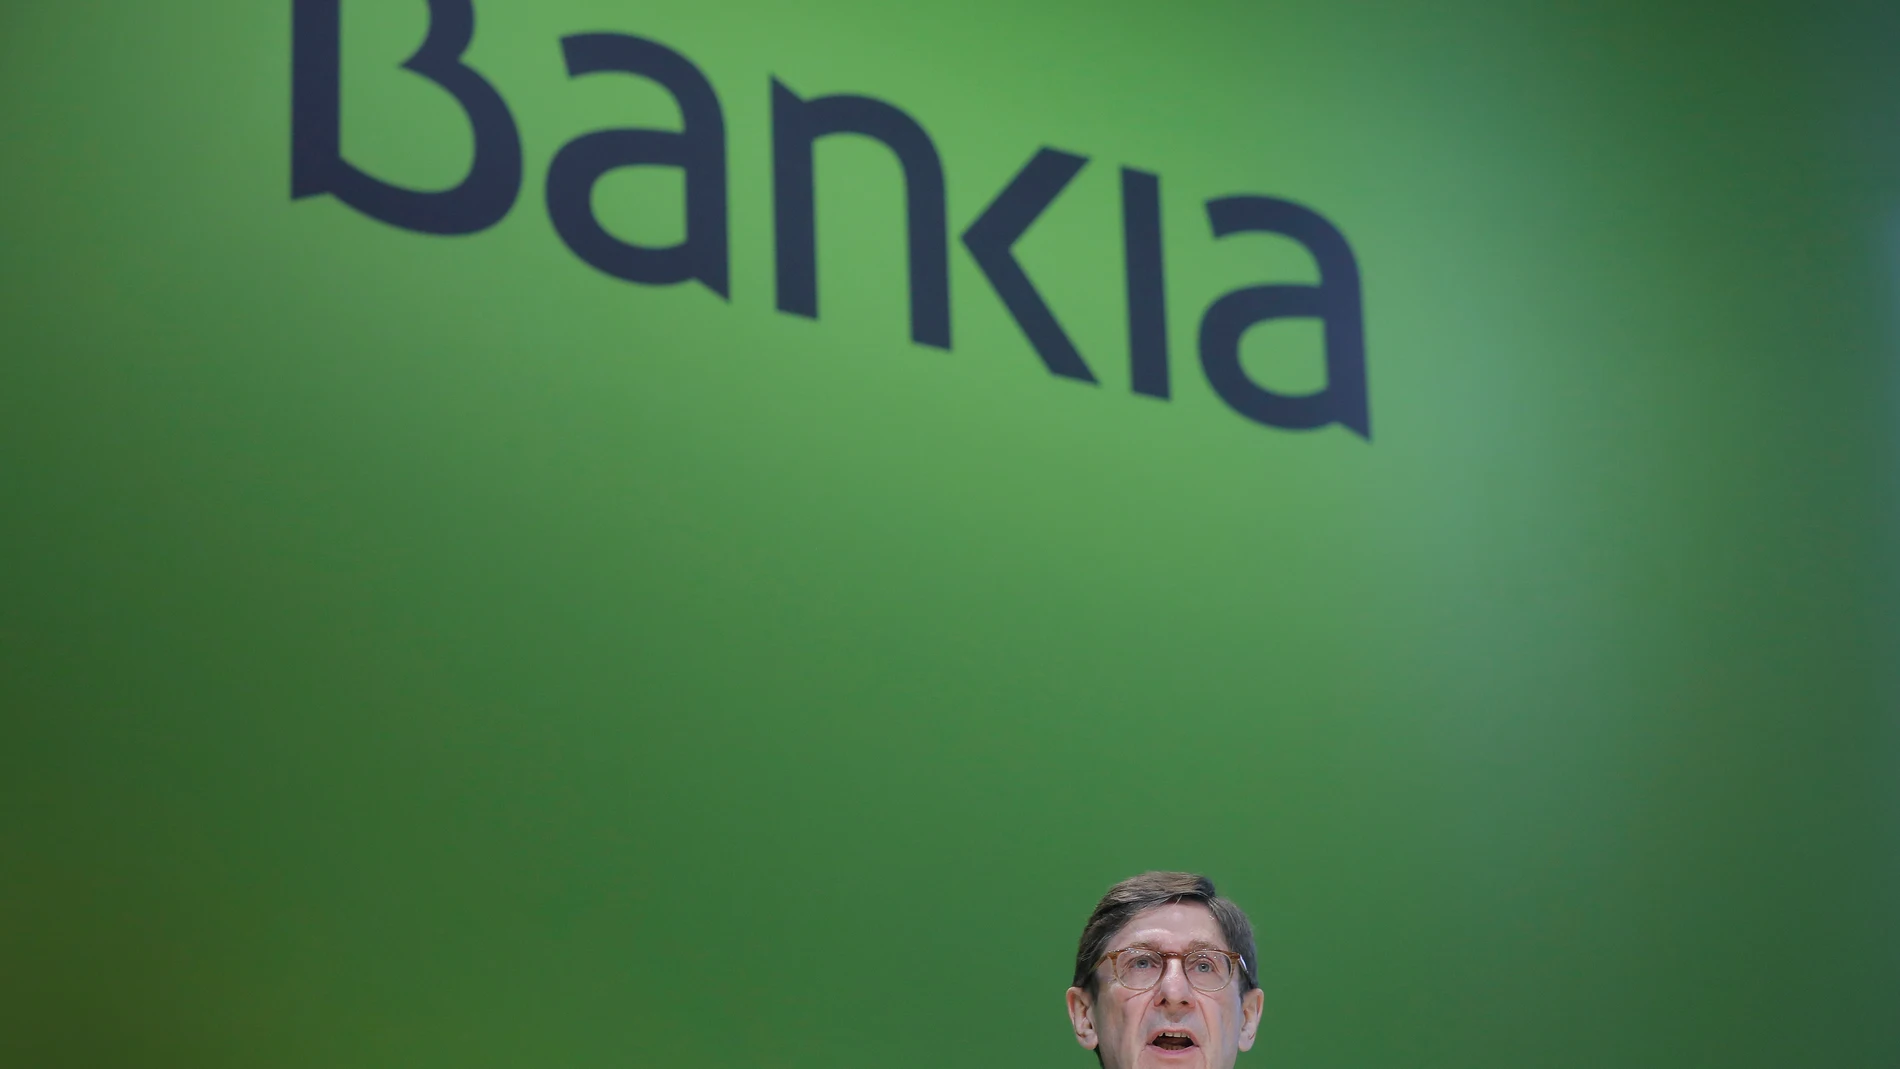 El presidente de Bankia, José Ignacio Goirigolzarri, interviene durante la Junta General Ordinaria de Accionistas de Bankia